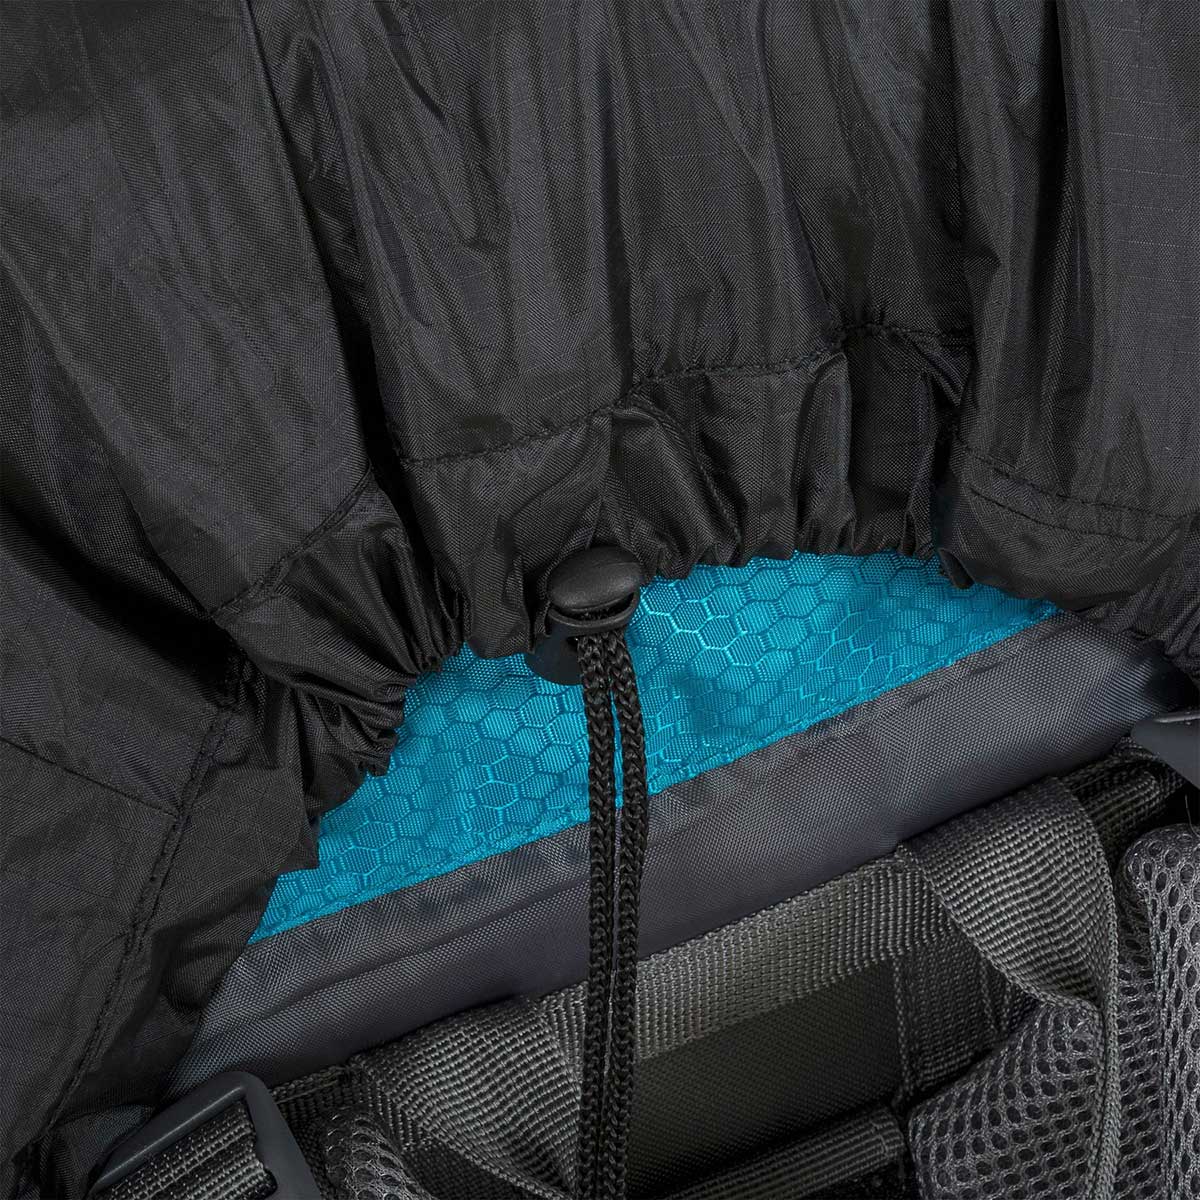 Pokrowiec na plecak Highlander Outdoor Medium Combo Rain Cover 50-70 l - Black 